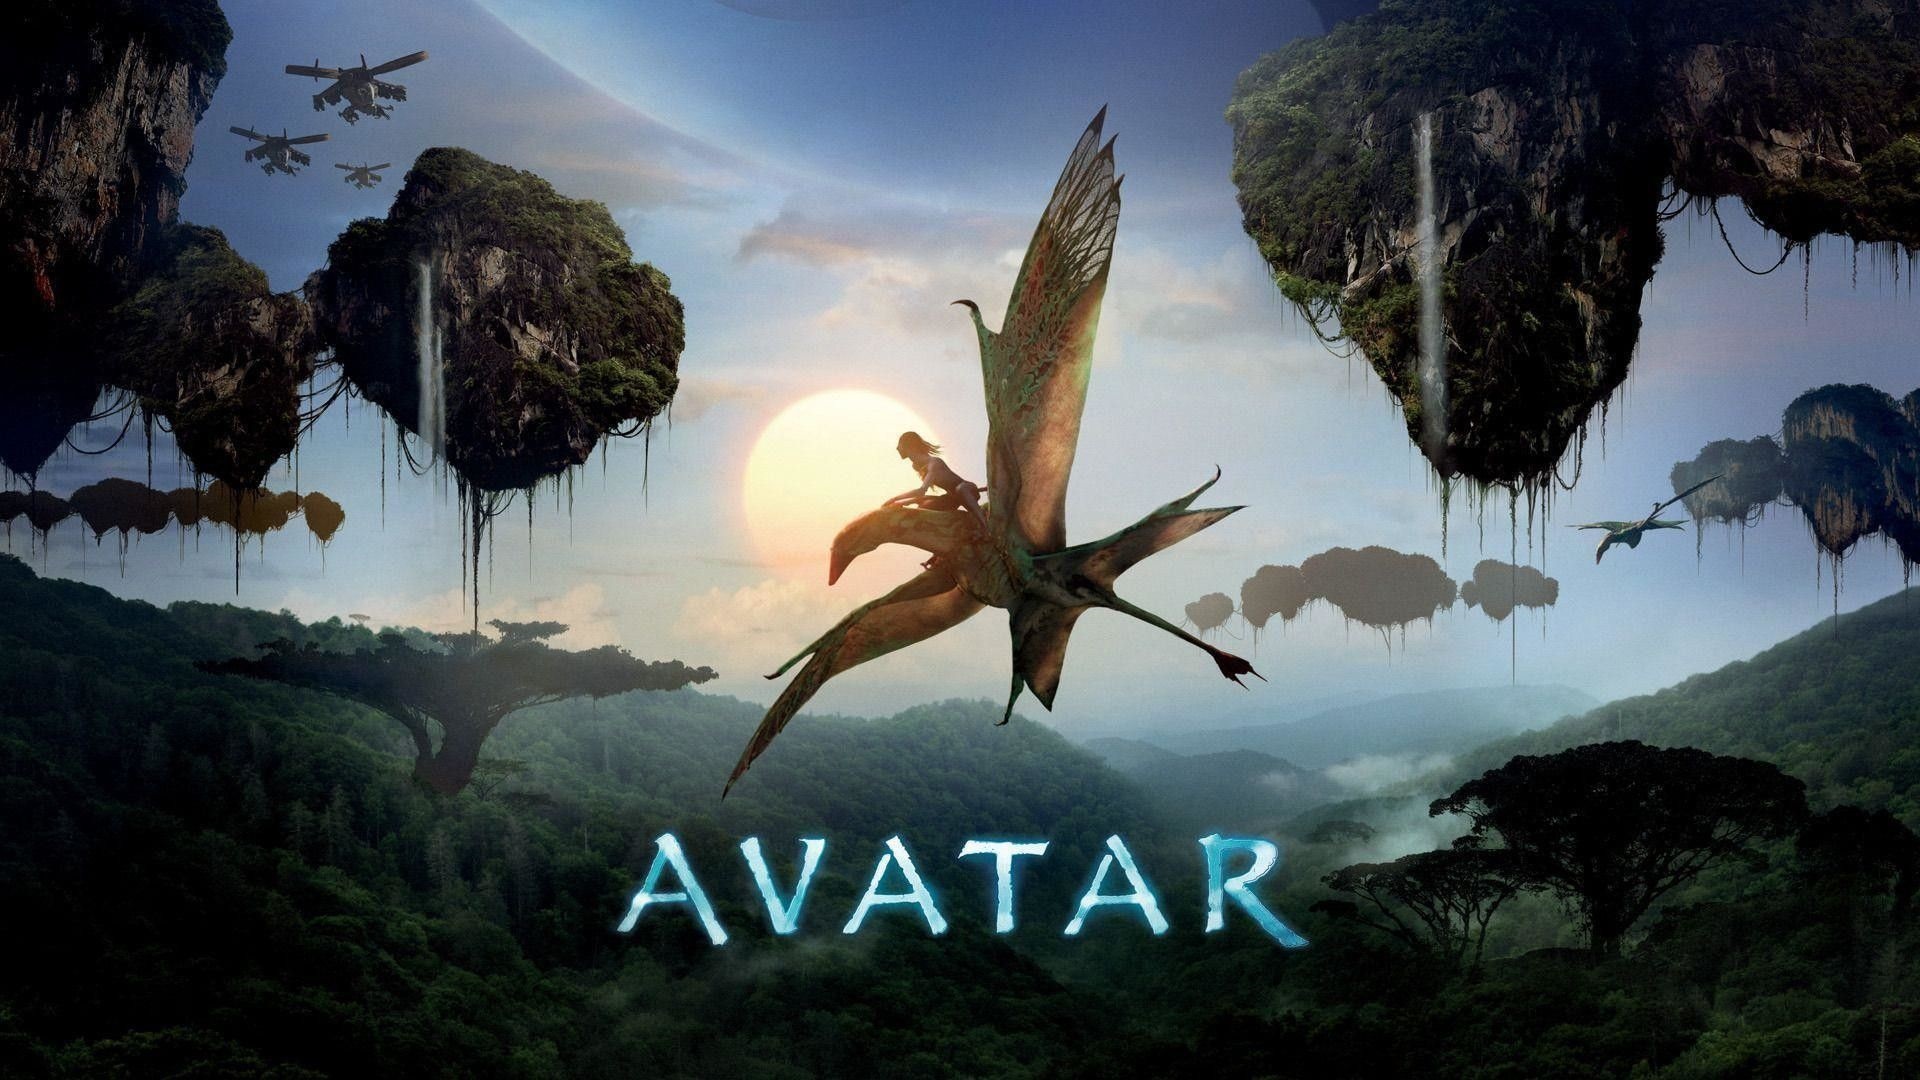 Avatar HD Wallpaper Free download